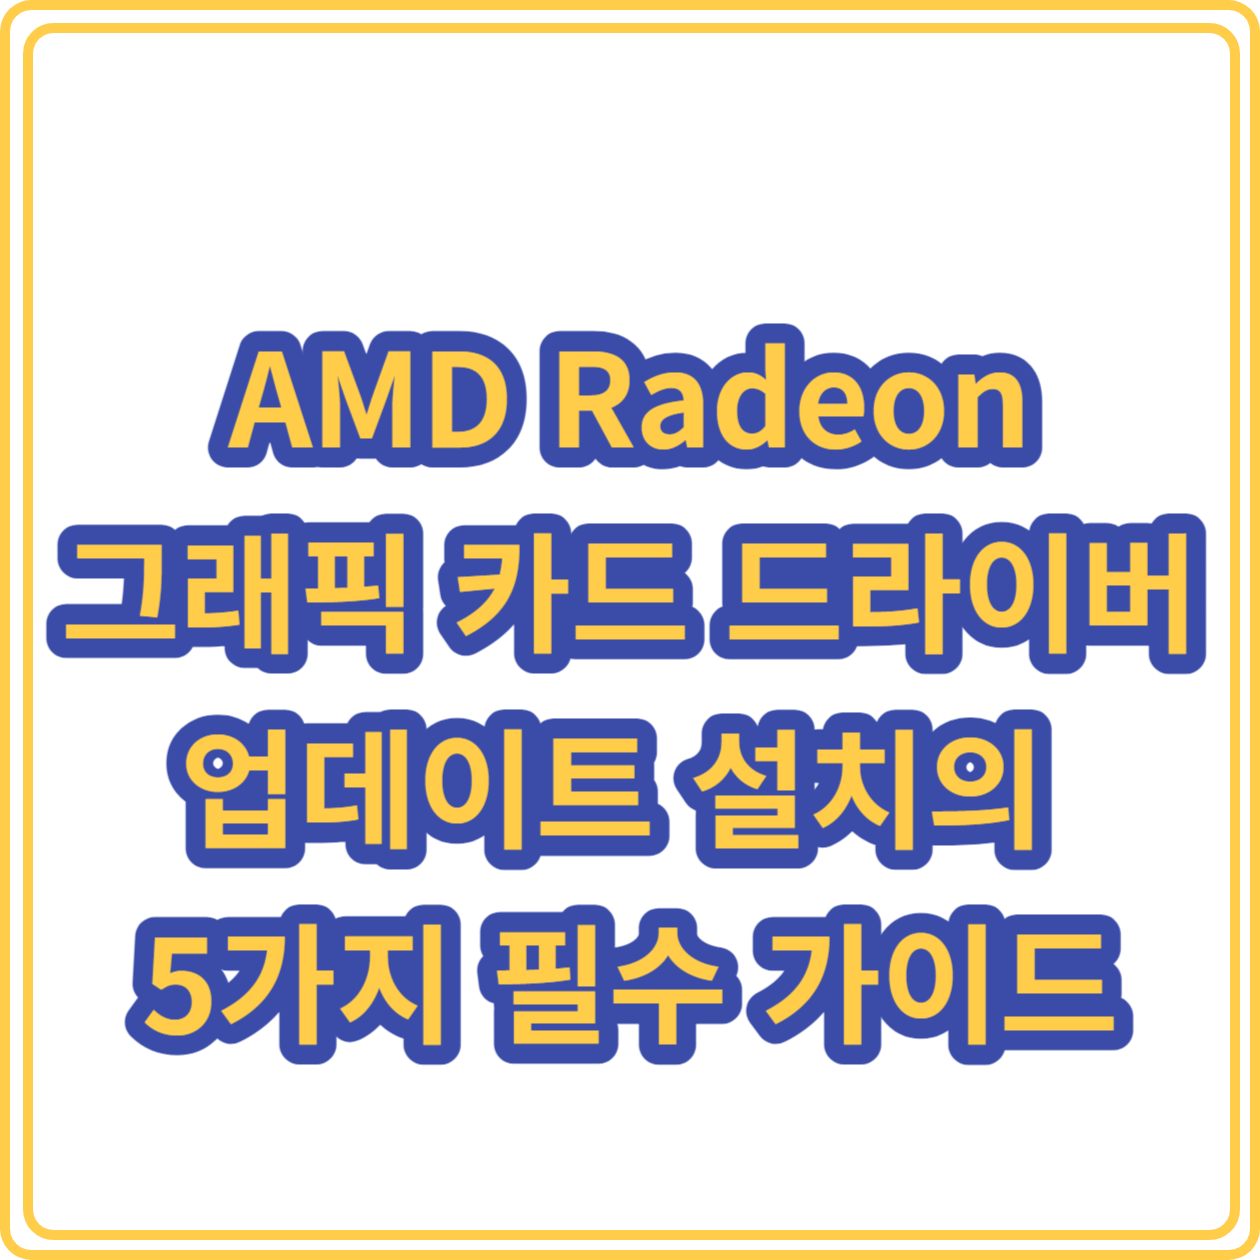 AMD Radeon 그래픽 카드 드라이버 업데이트 설치의 5가지 필수 가이드